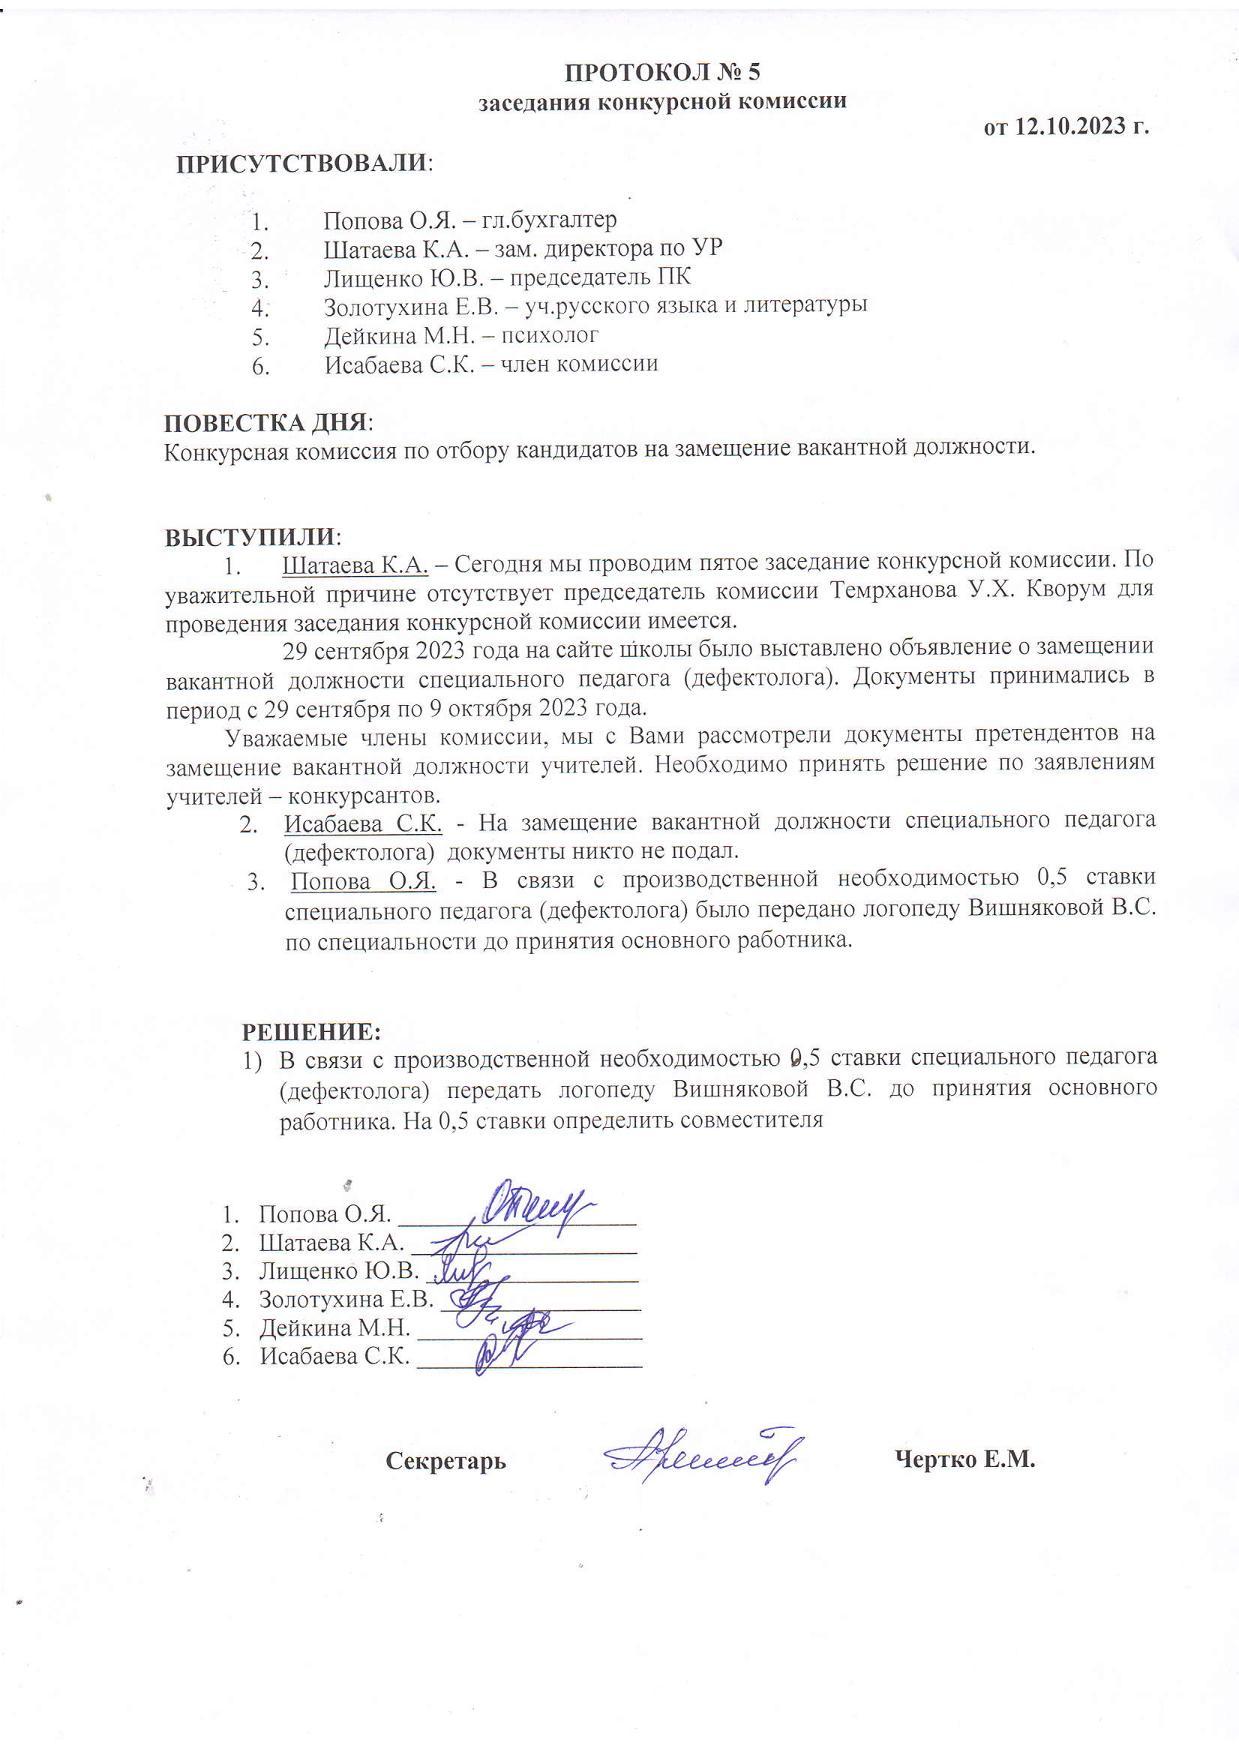 ПРОТОКОЛ №5 заседания конкурсной комиссии от 12.10.2023